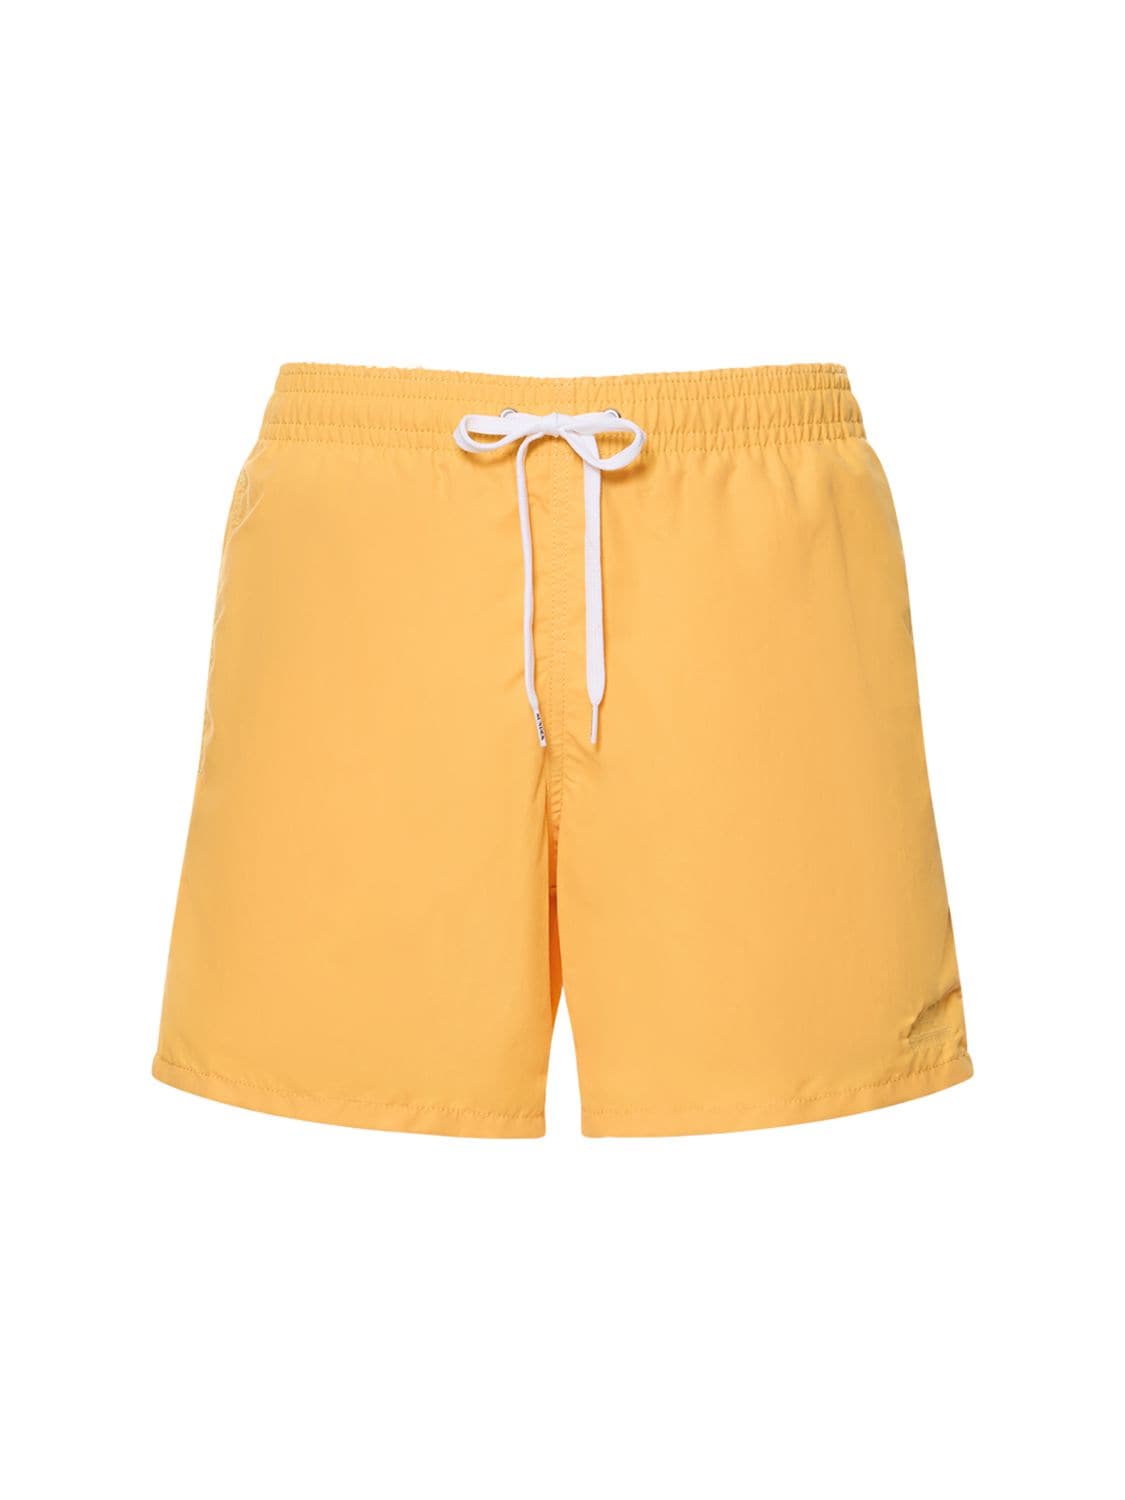 Sundek Stretch Waist Soft Nylon Swim Shorts In Mustard